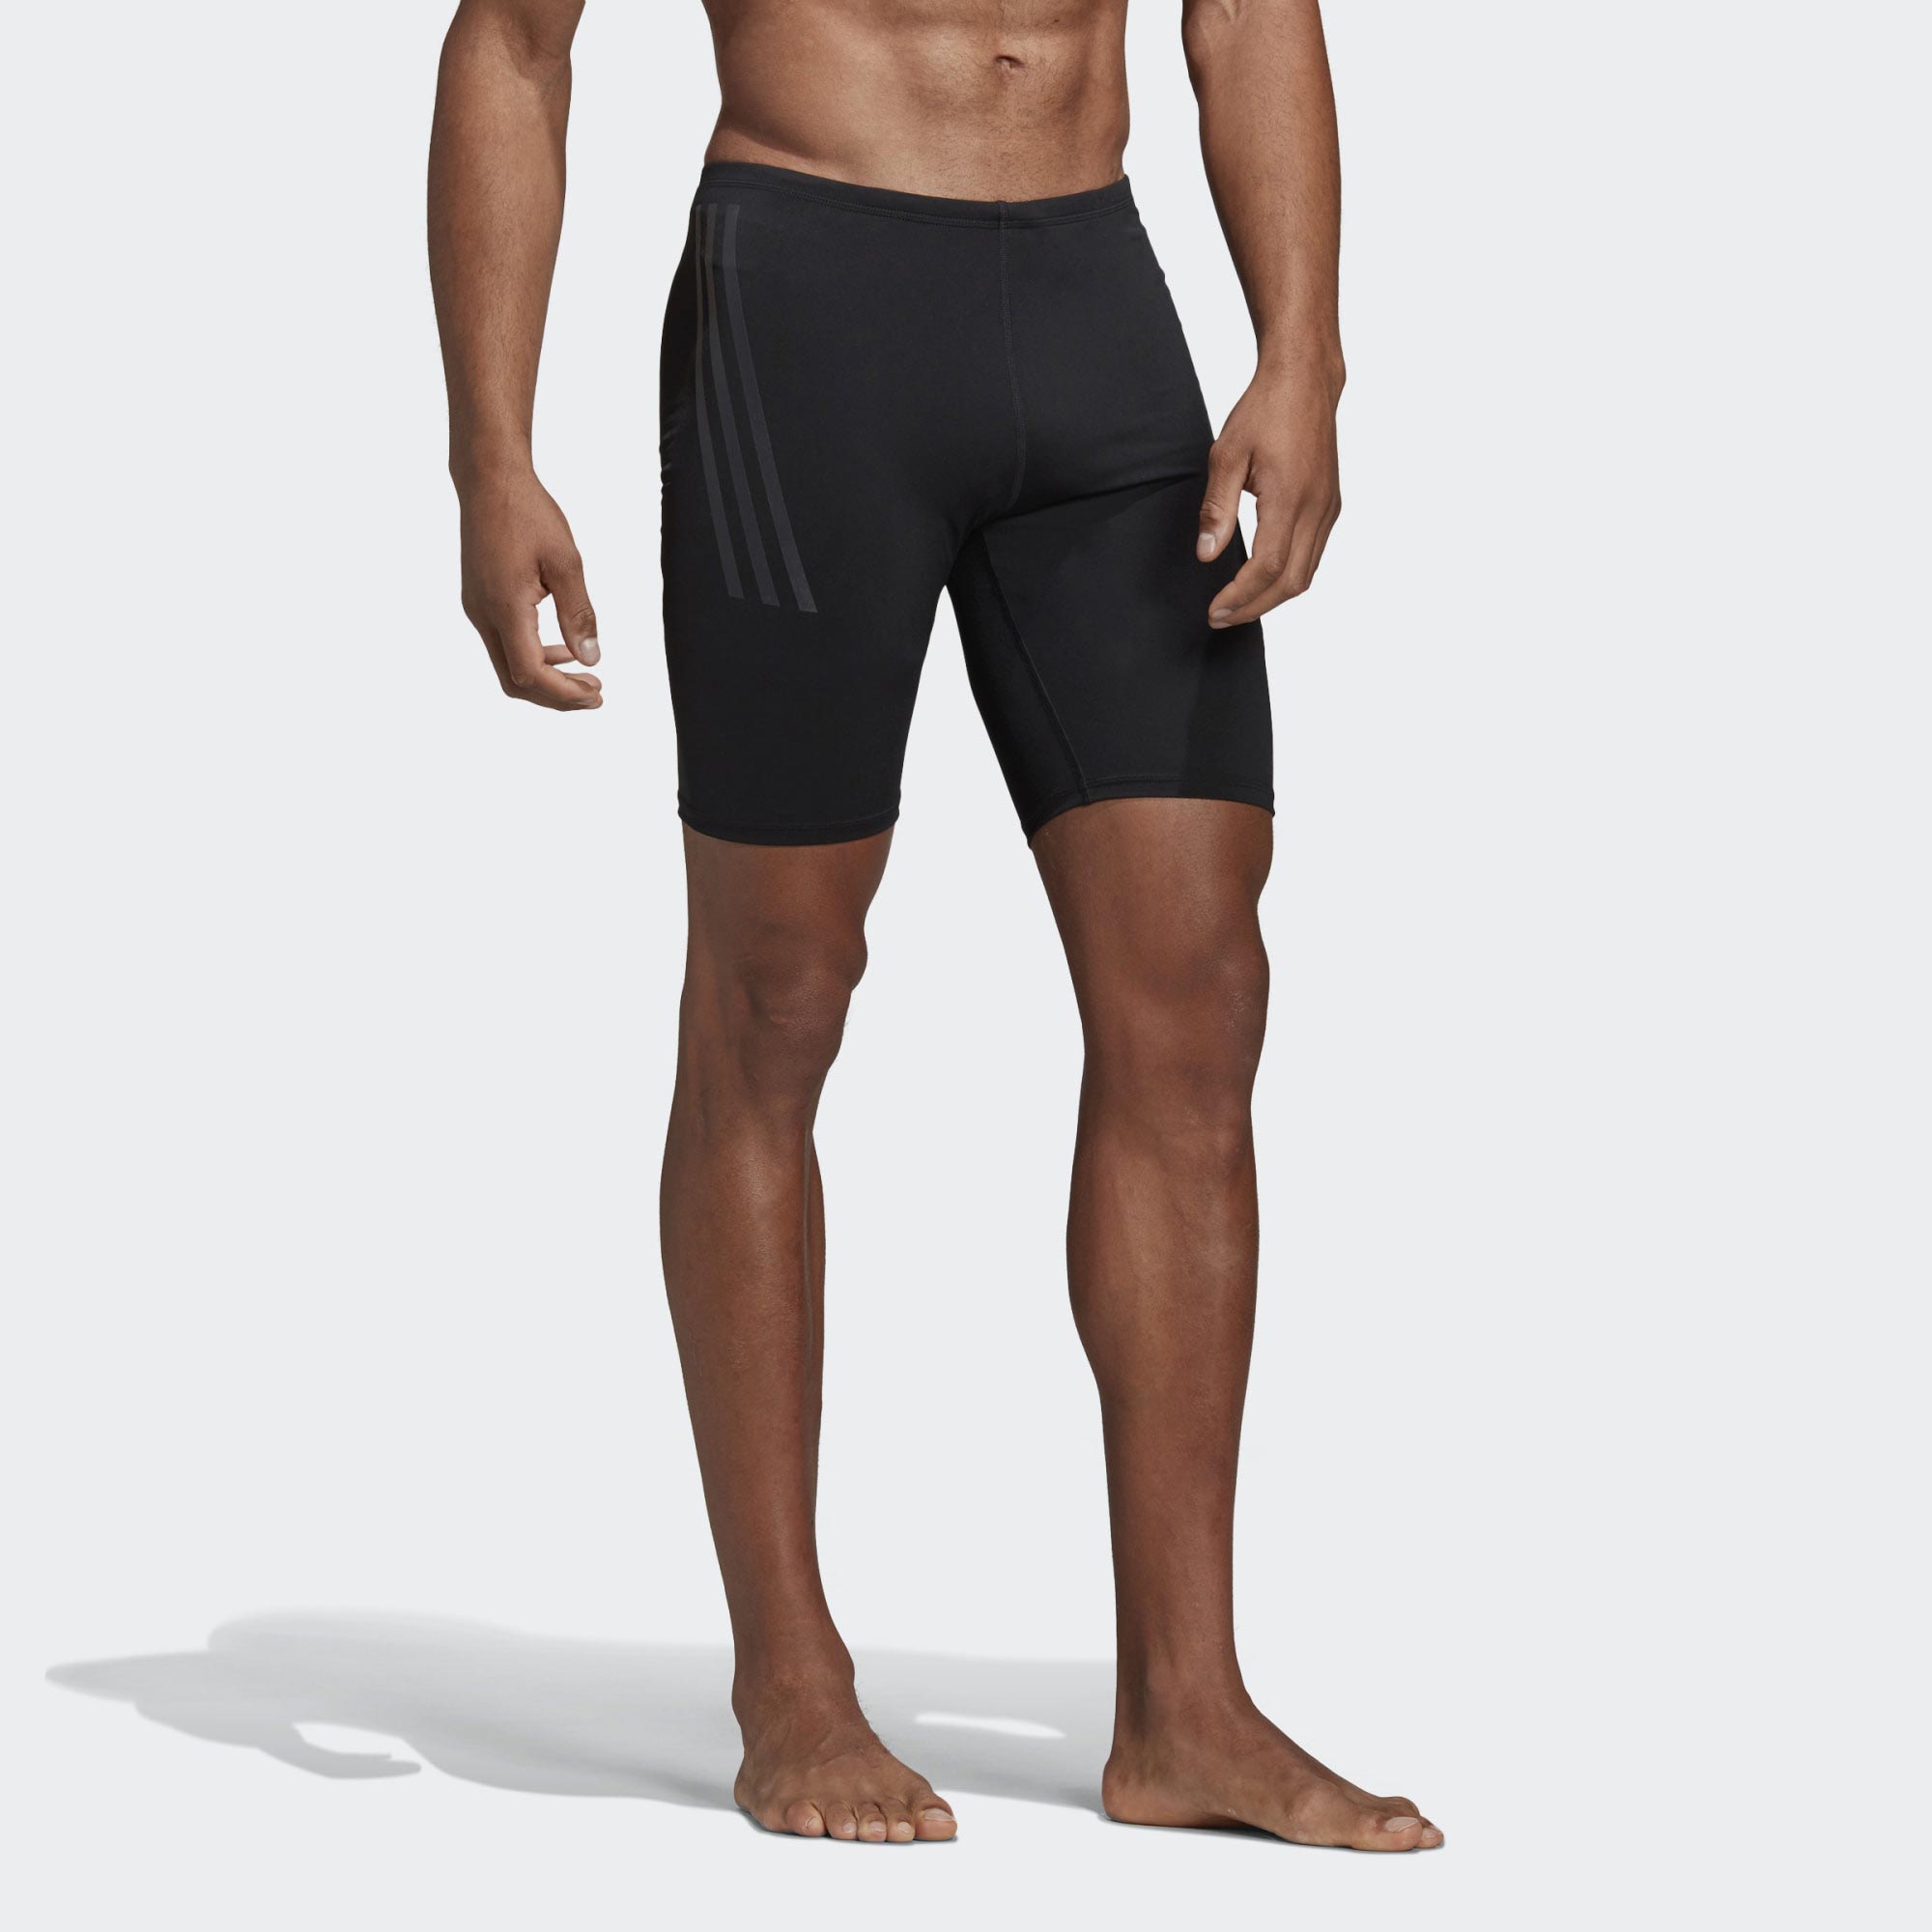 Men’s compression swimsuit